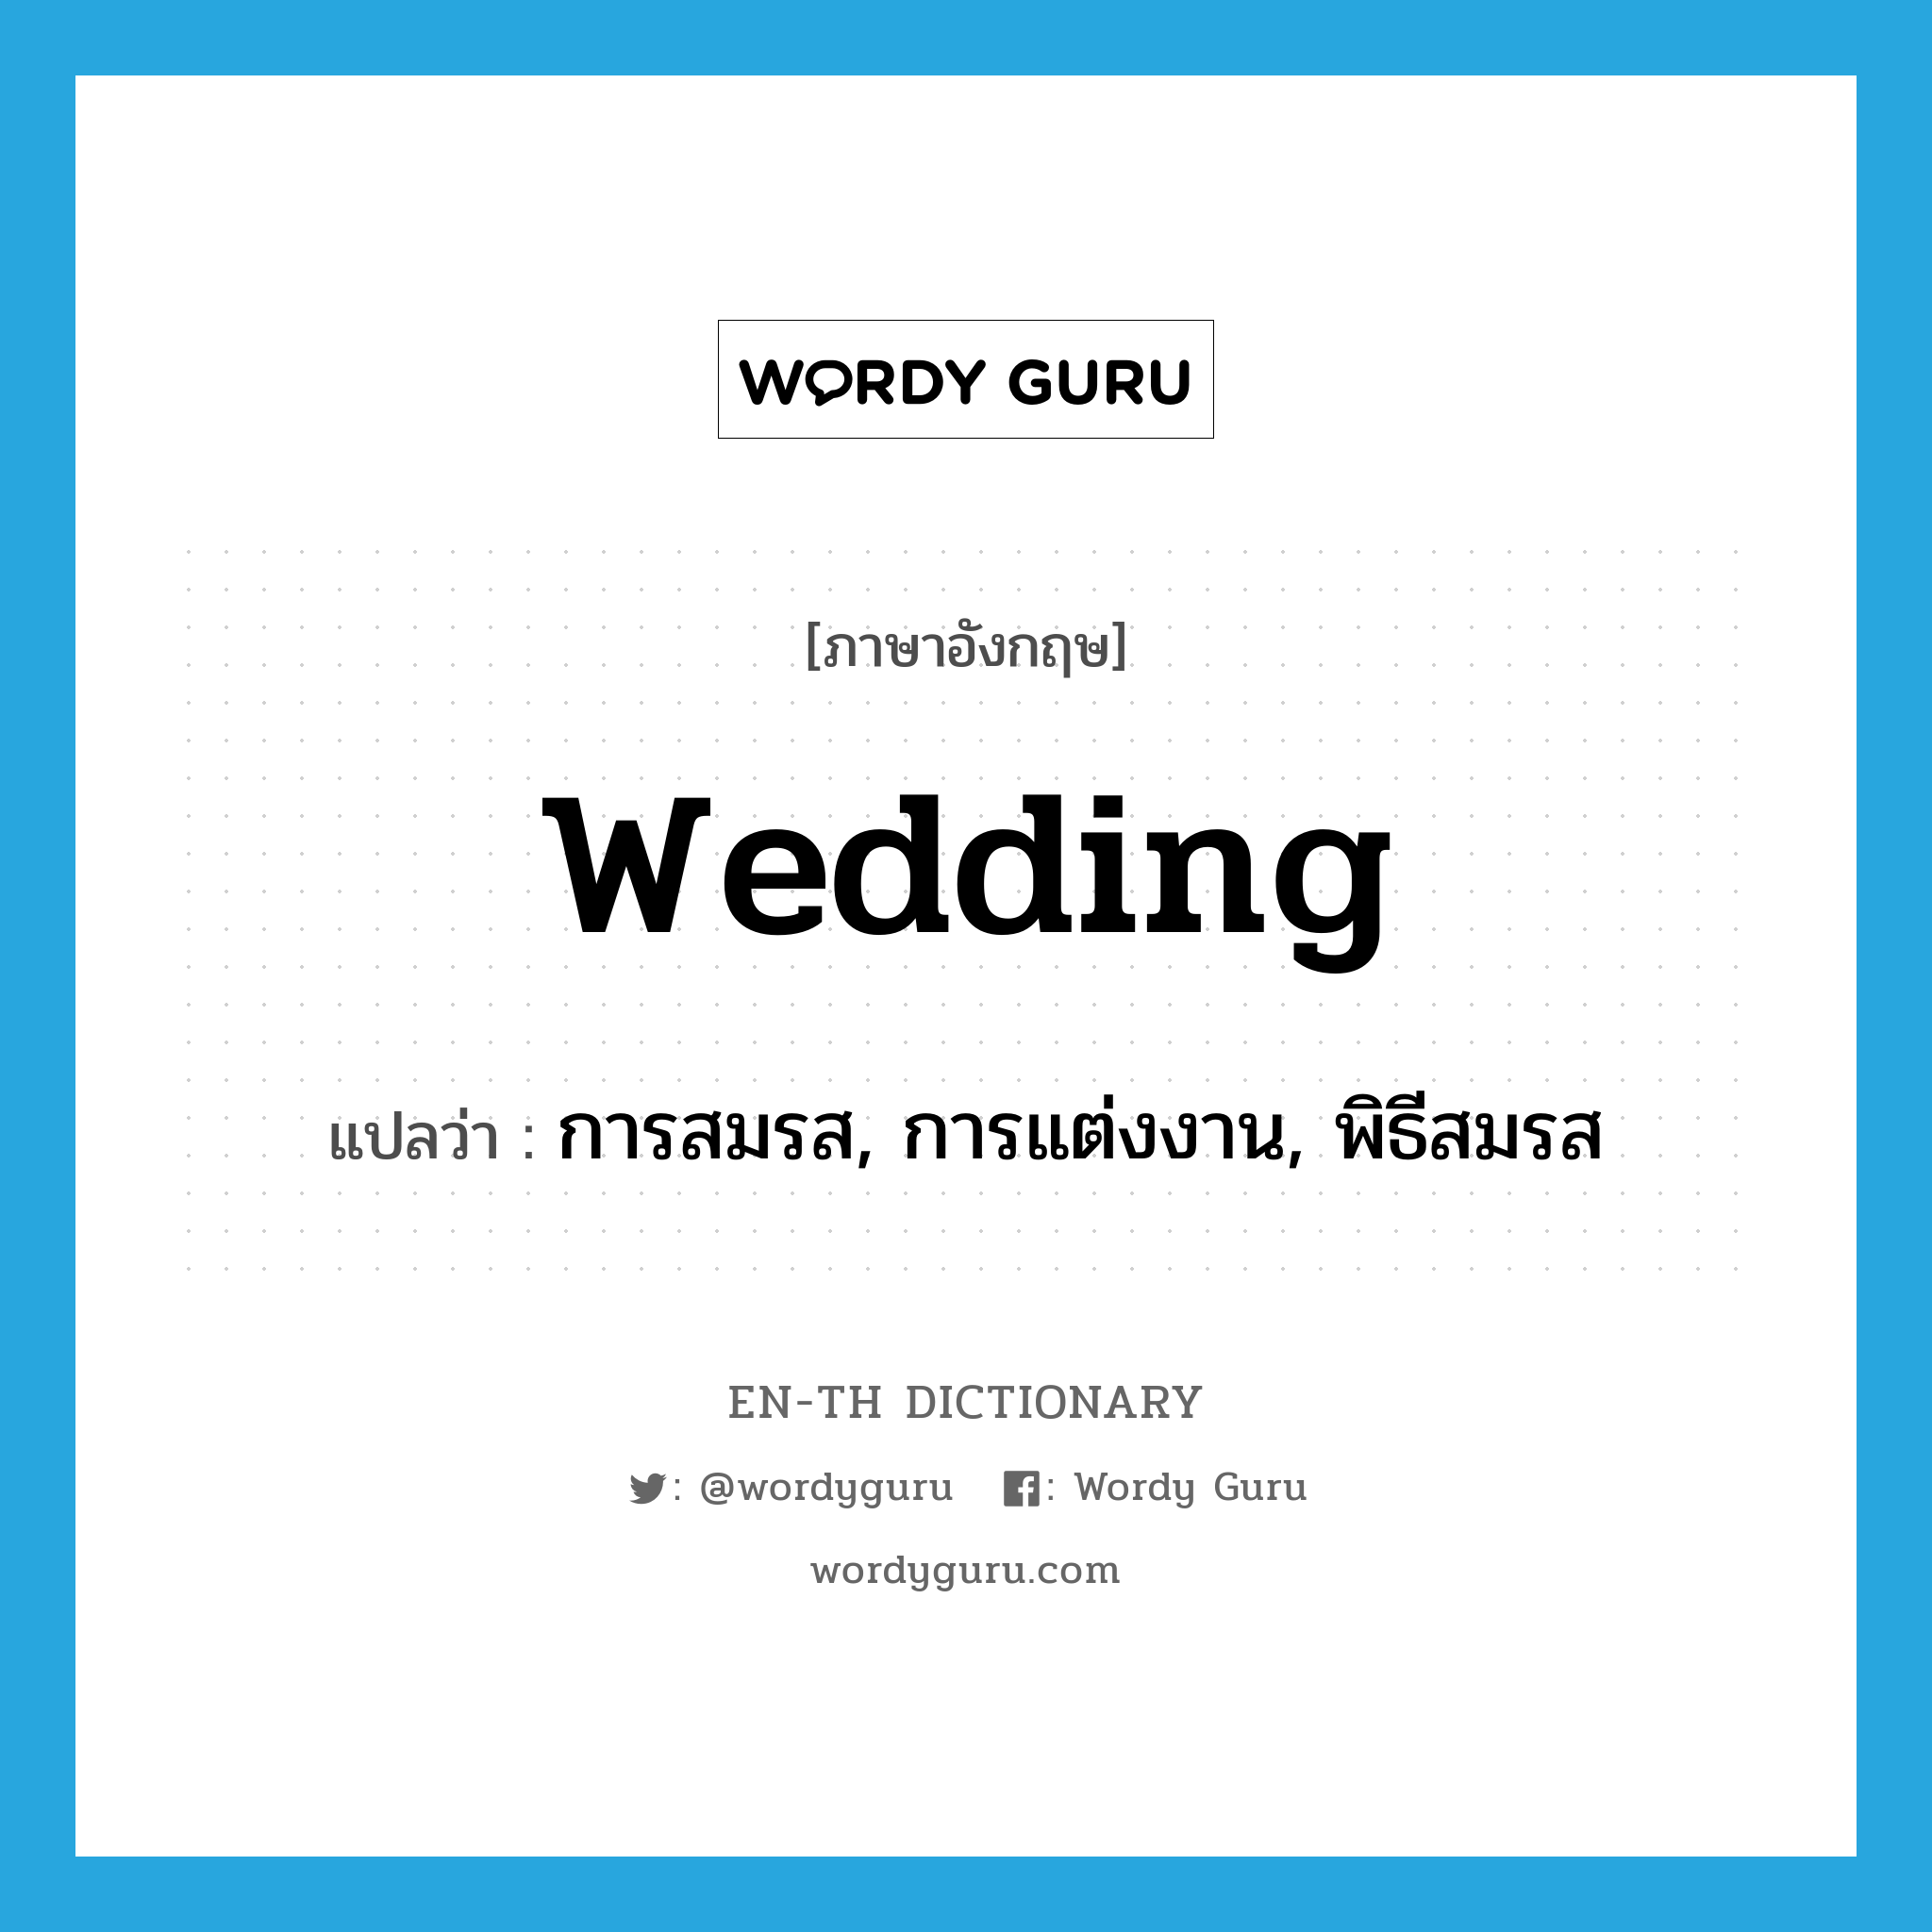 การสมรส, การแต่งงาน, พิธีสมรส ภาษาอังกฤษ?, คำศัพท์ภาษาอังกฤษ การสมรส, การแต่งงาน, พิธีสมรส แปลว่า wedding ประเภท N หมวด N